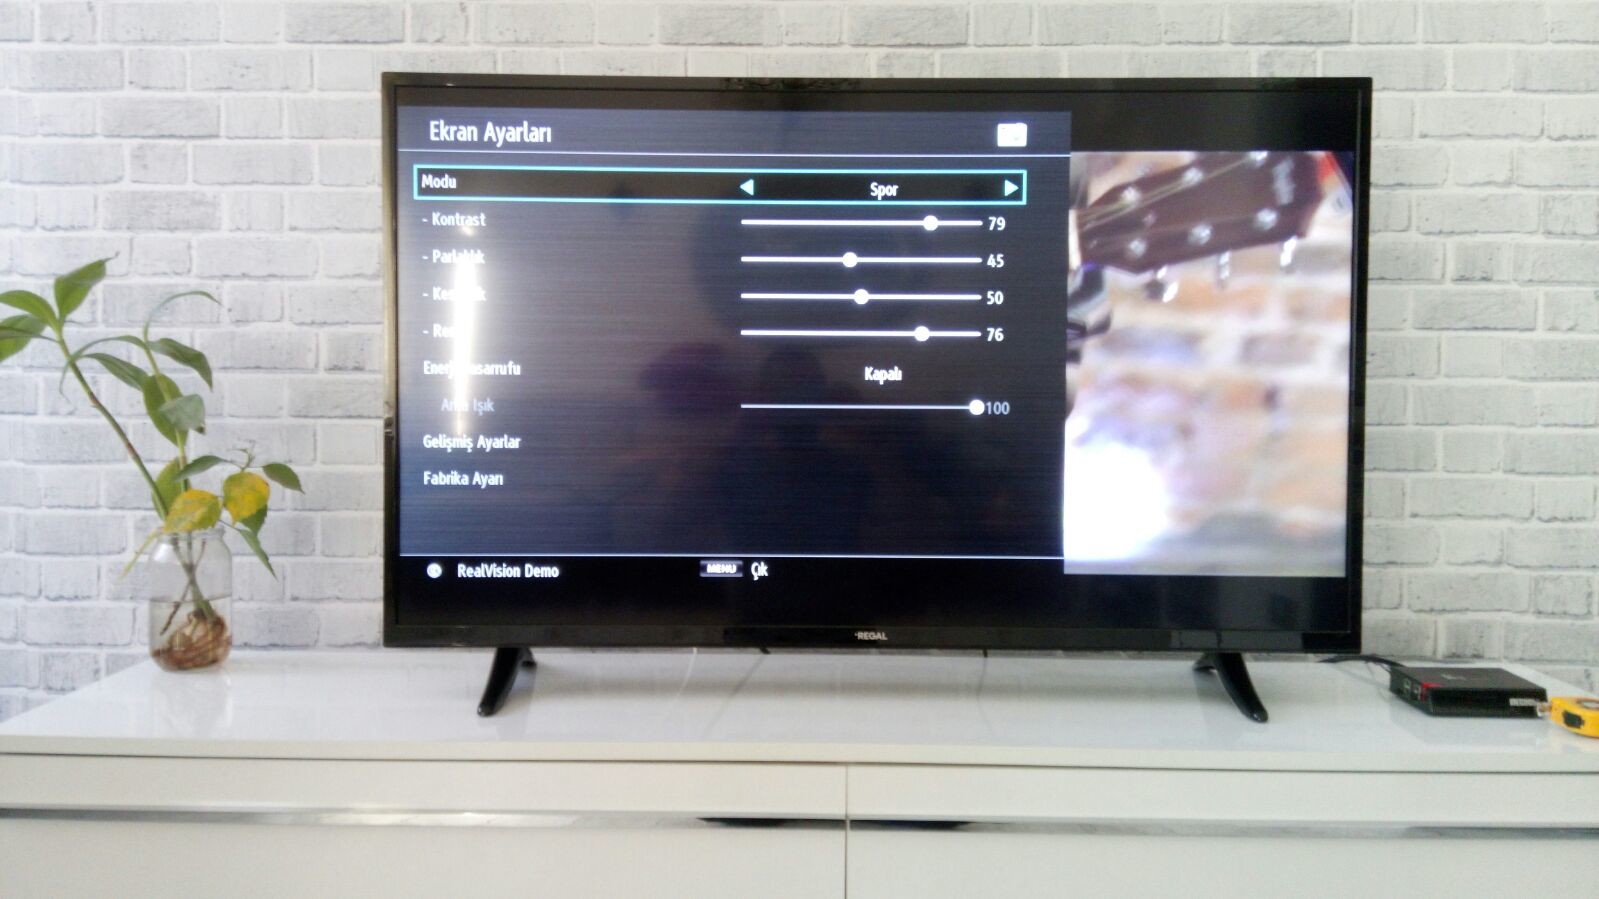 REGAL 50R5020U 50" 4K LED TV hakkında bilgisi olan?